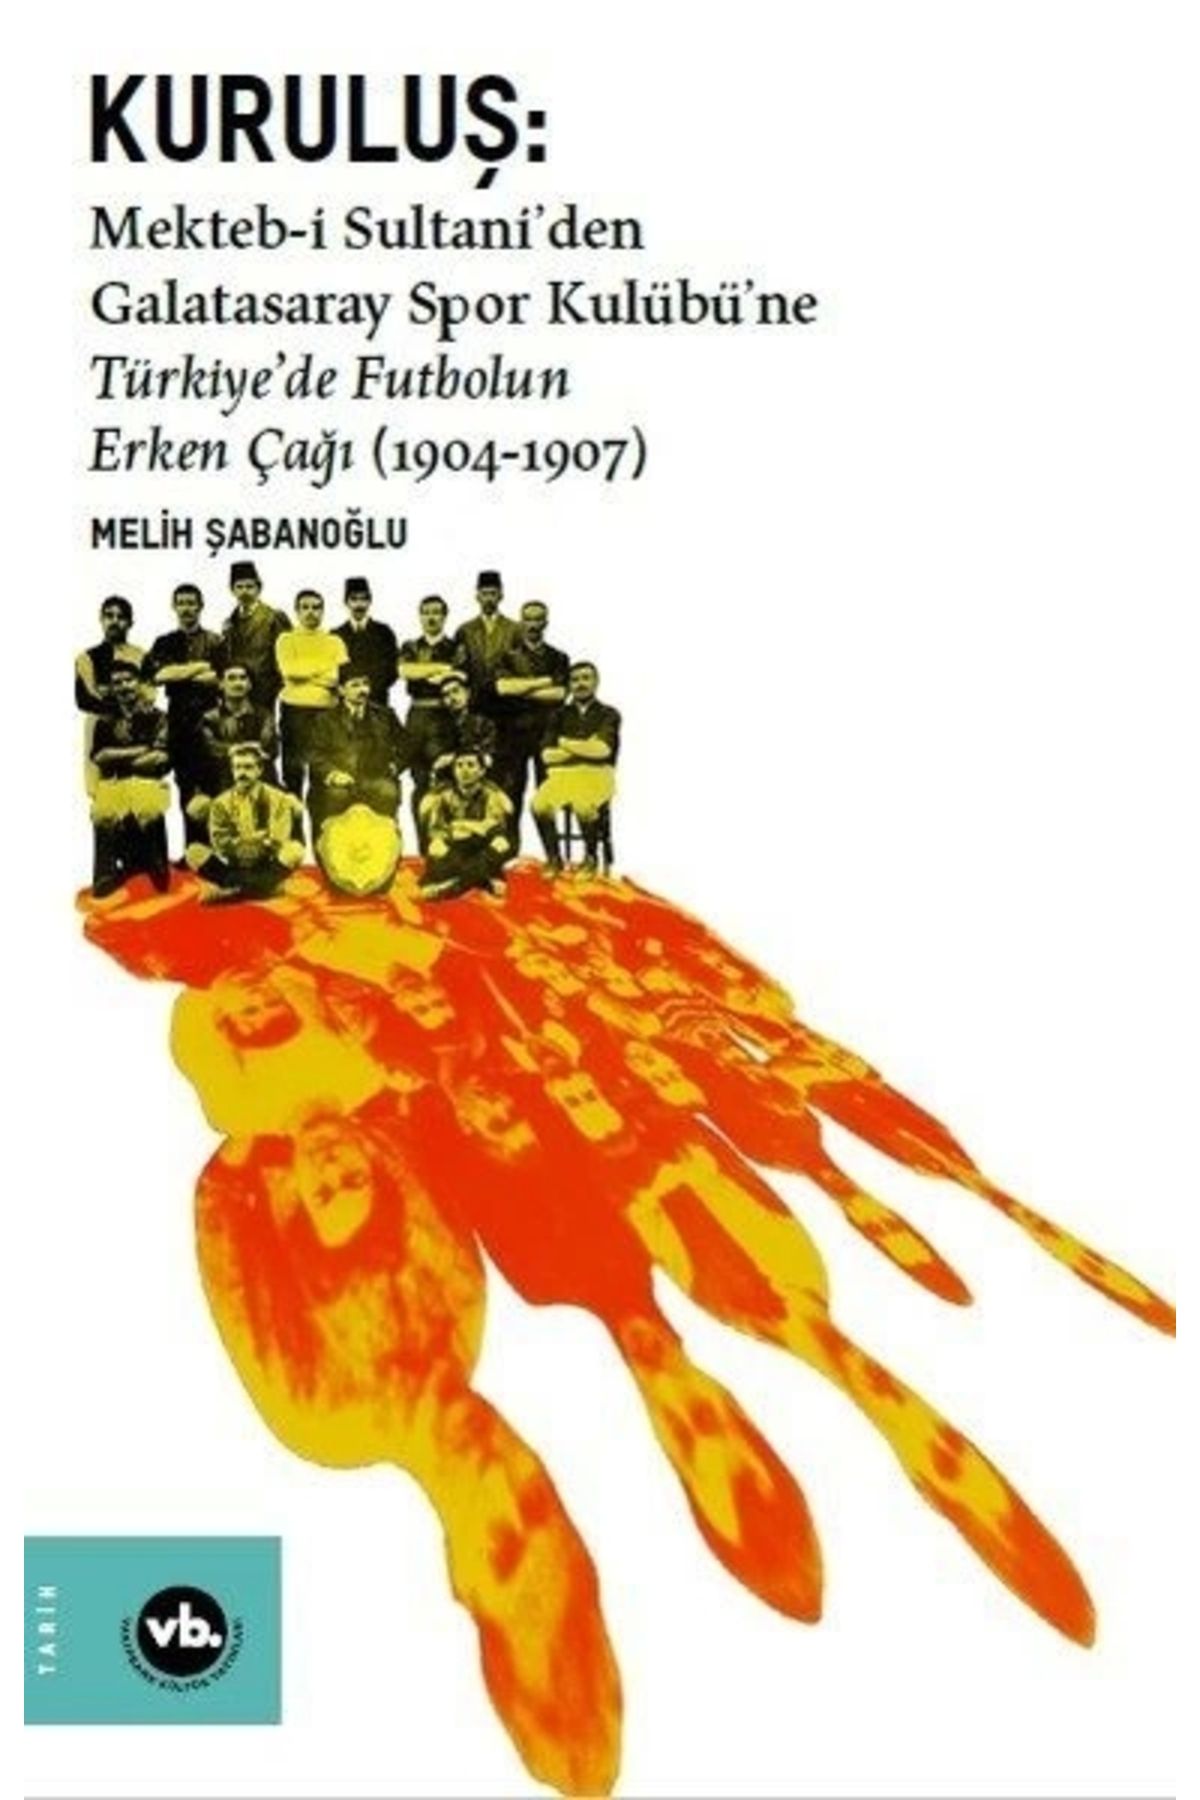 Vakıfbank Kültür Yayınları Kuruluş: Mektebi Sultaniden Galatasaray Spor Kulübüne Türkiyede Futbolun Erken Çağı (1904-1907)